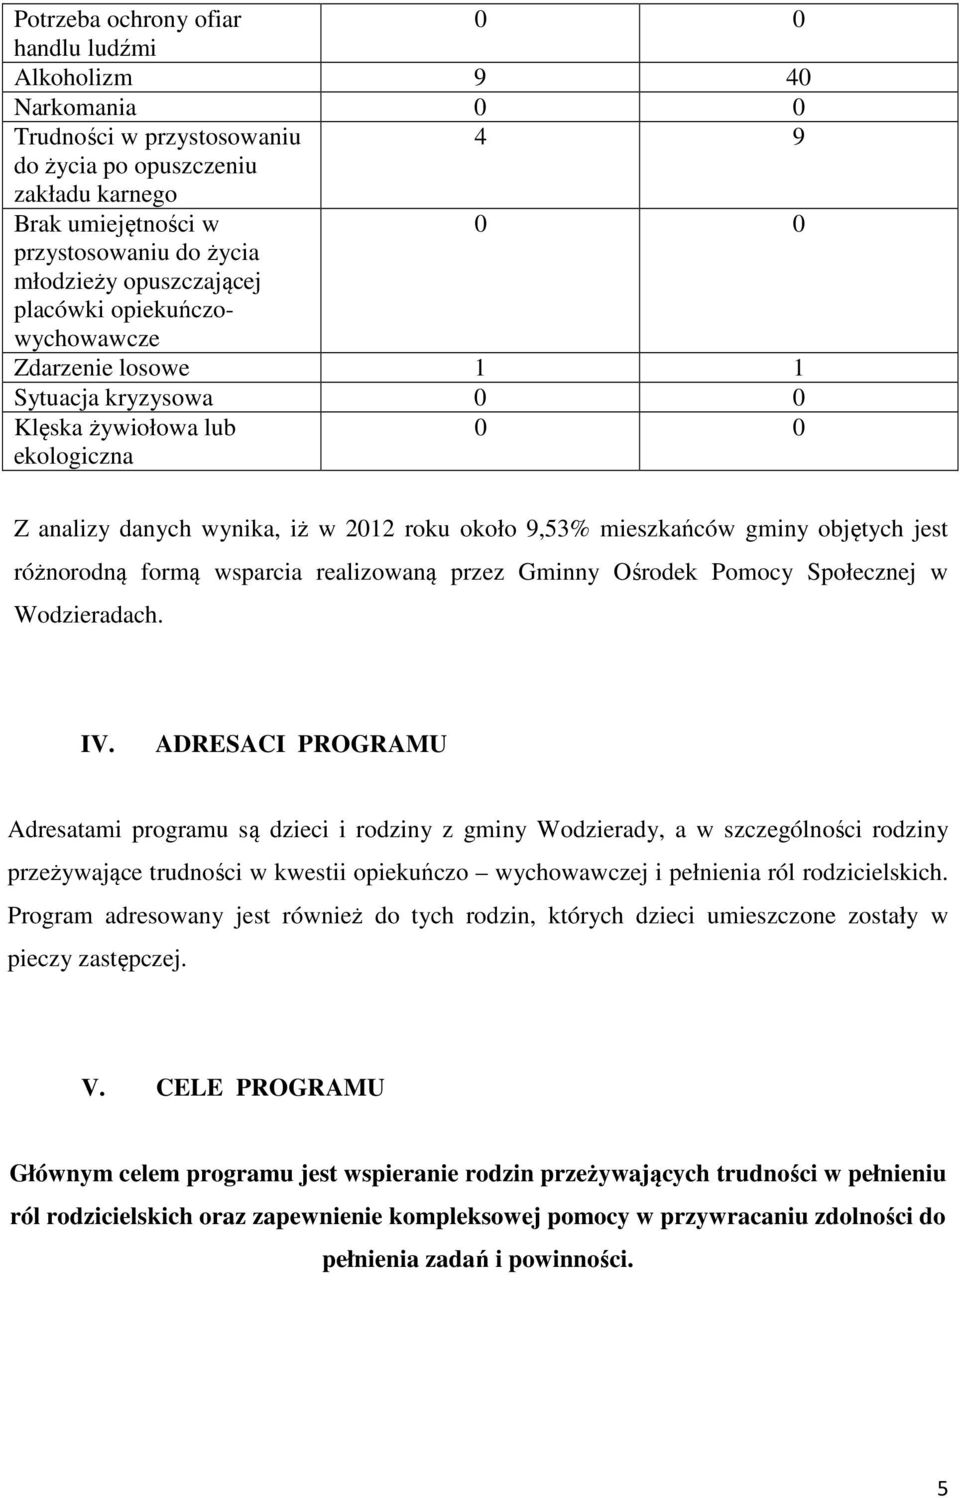 gminy objętych jest różnorodną formą wsparcia realizowaną przez Gminny Ośrodek Pomocy Społecznej w Wodzieradach. IV.